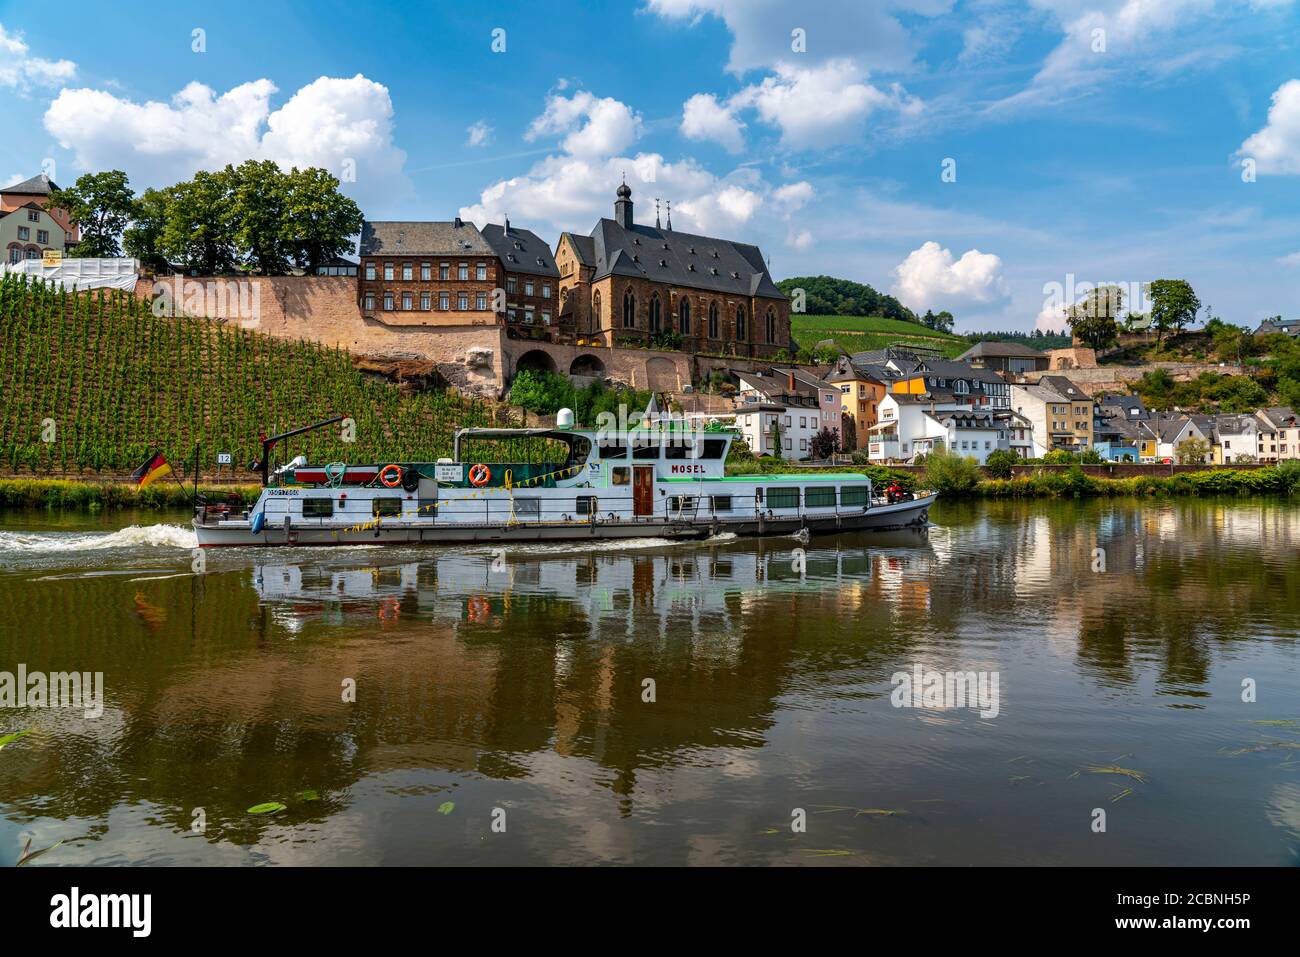 Die Stadt Saarburg, an der Saar, Schloss, evangelische Kirche, alte Stadtbrücke, Ausflugsboot, Rheinland-Pfalz, Deutschland Stockfoto